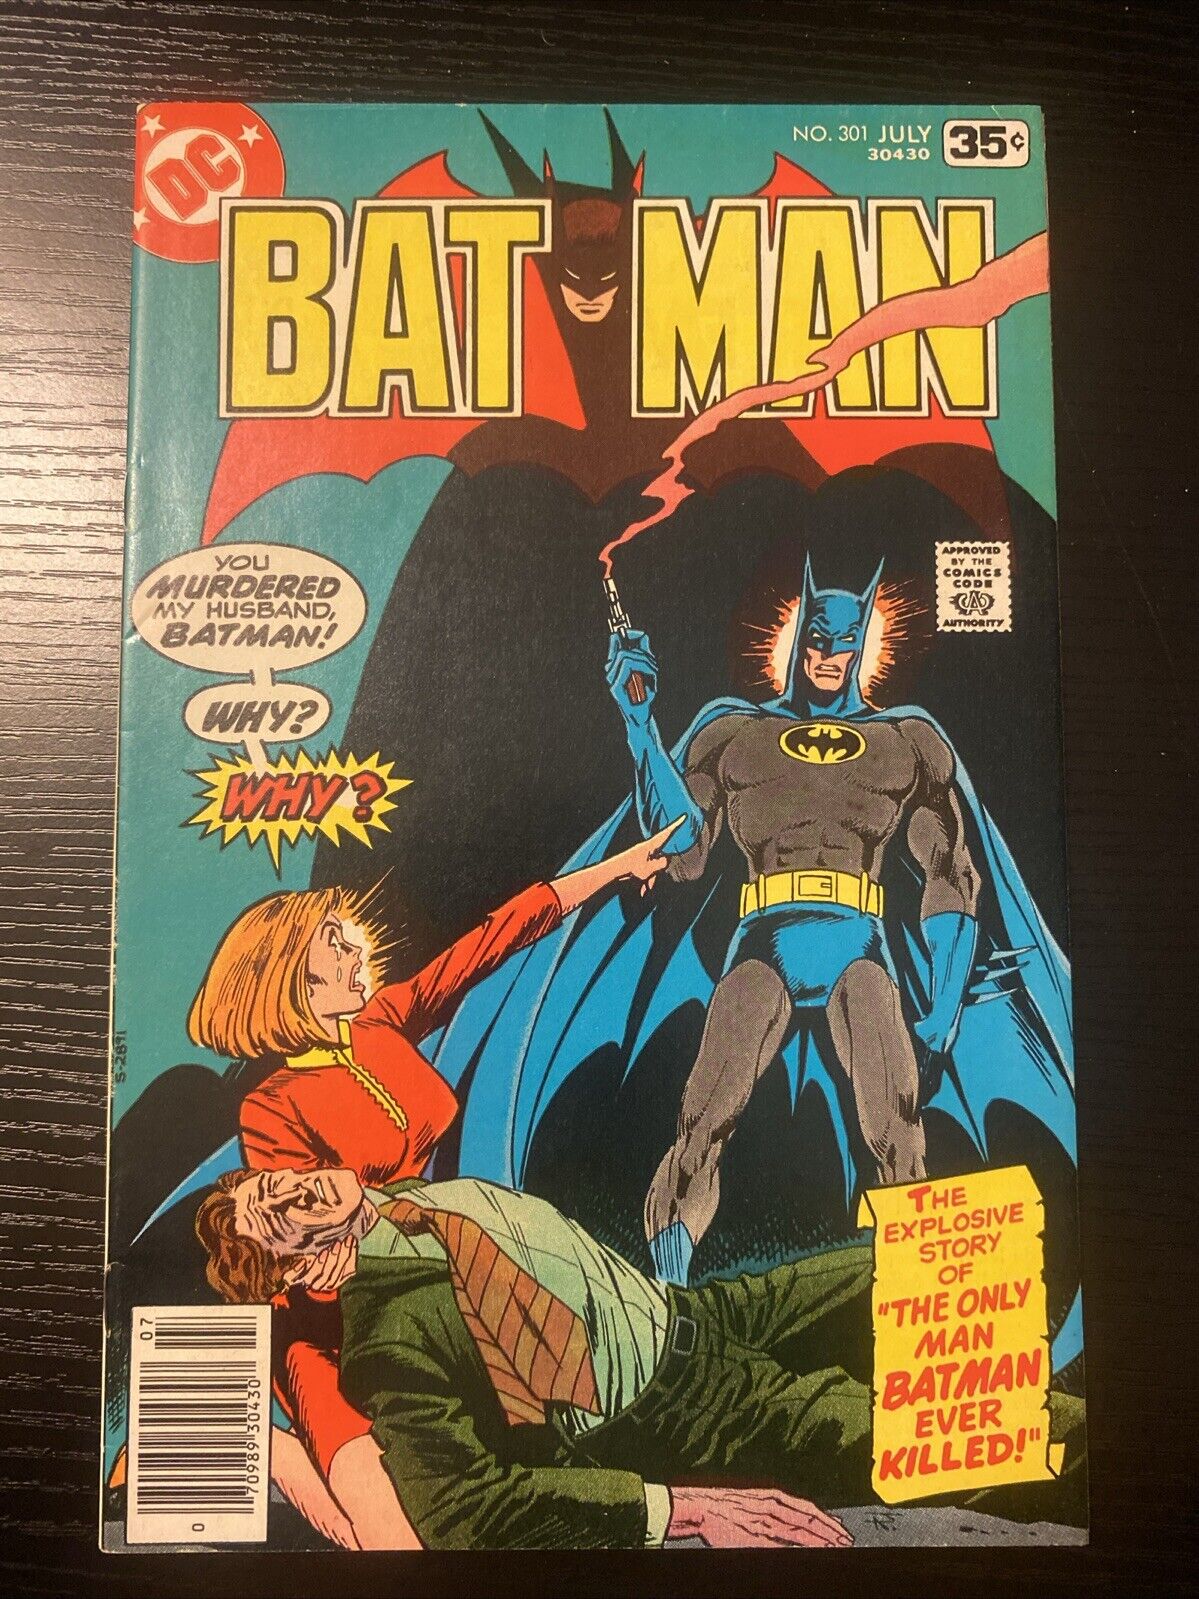 Batman #301 (DC Comics July 1978)